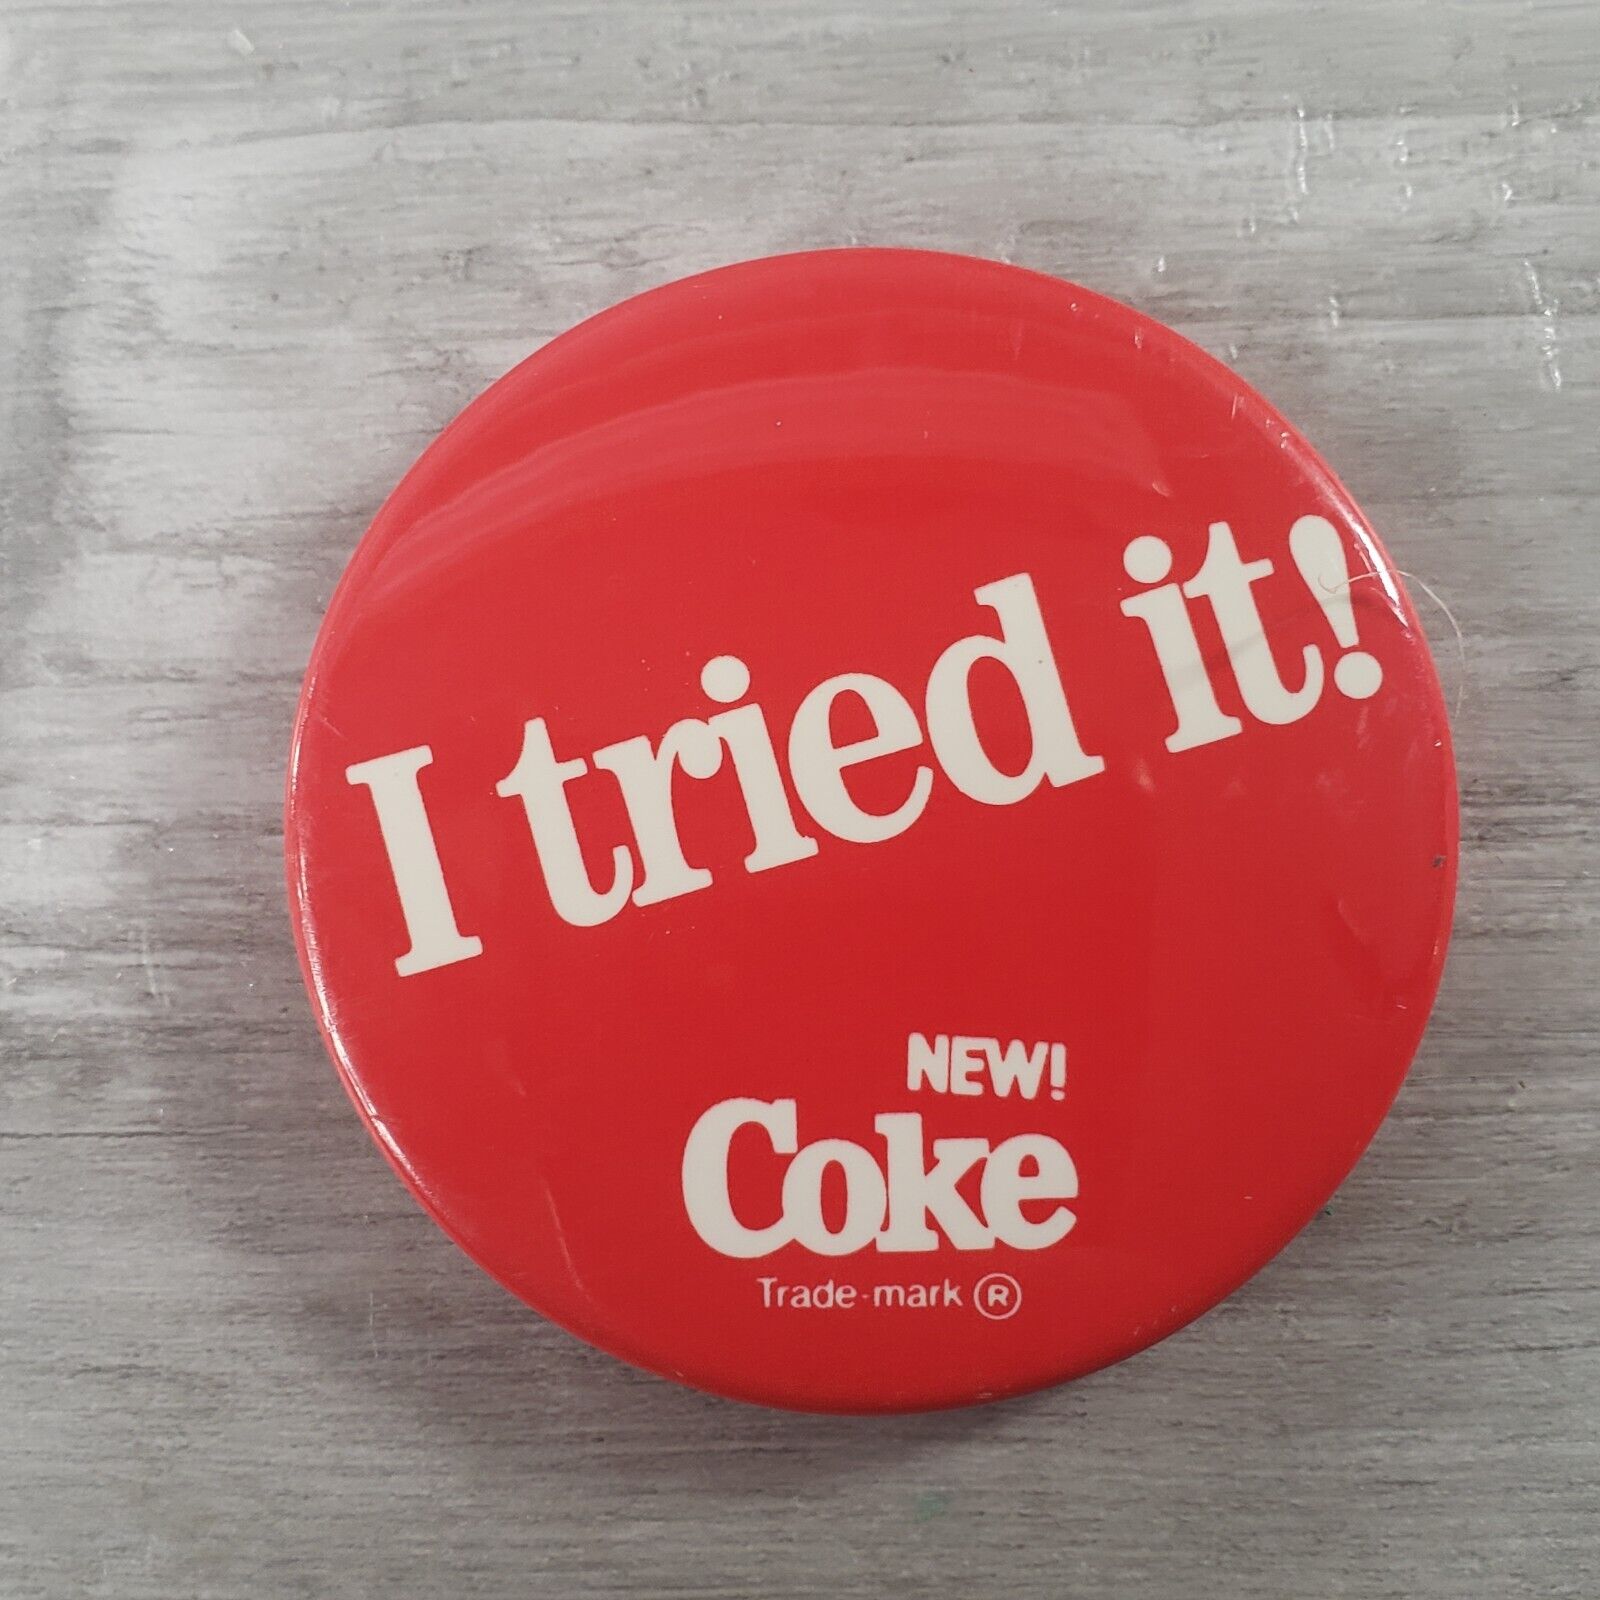 Vtg 80's Coke Pin I Tried It! New! Coke Pinback Button Badge Coca Cola